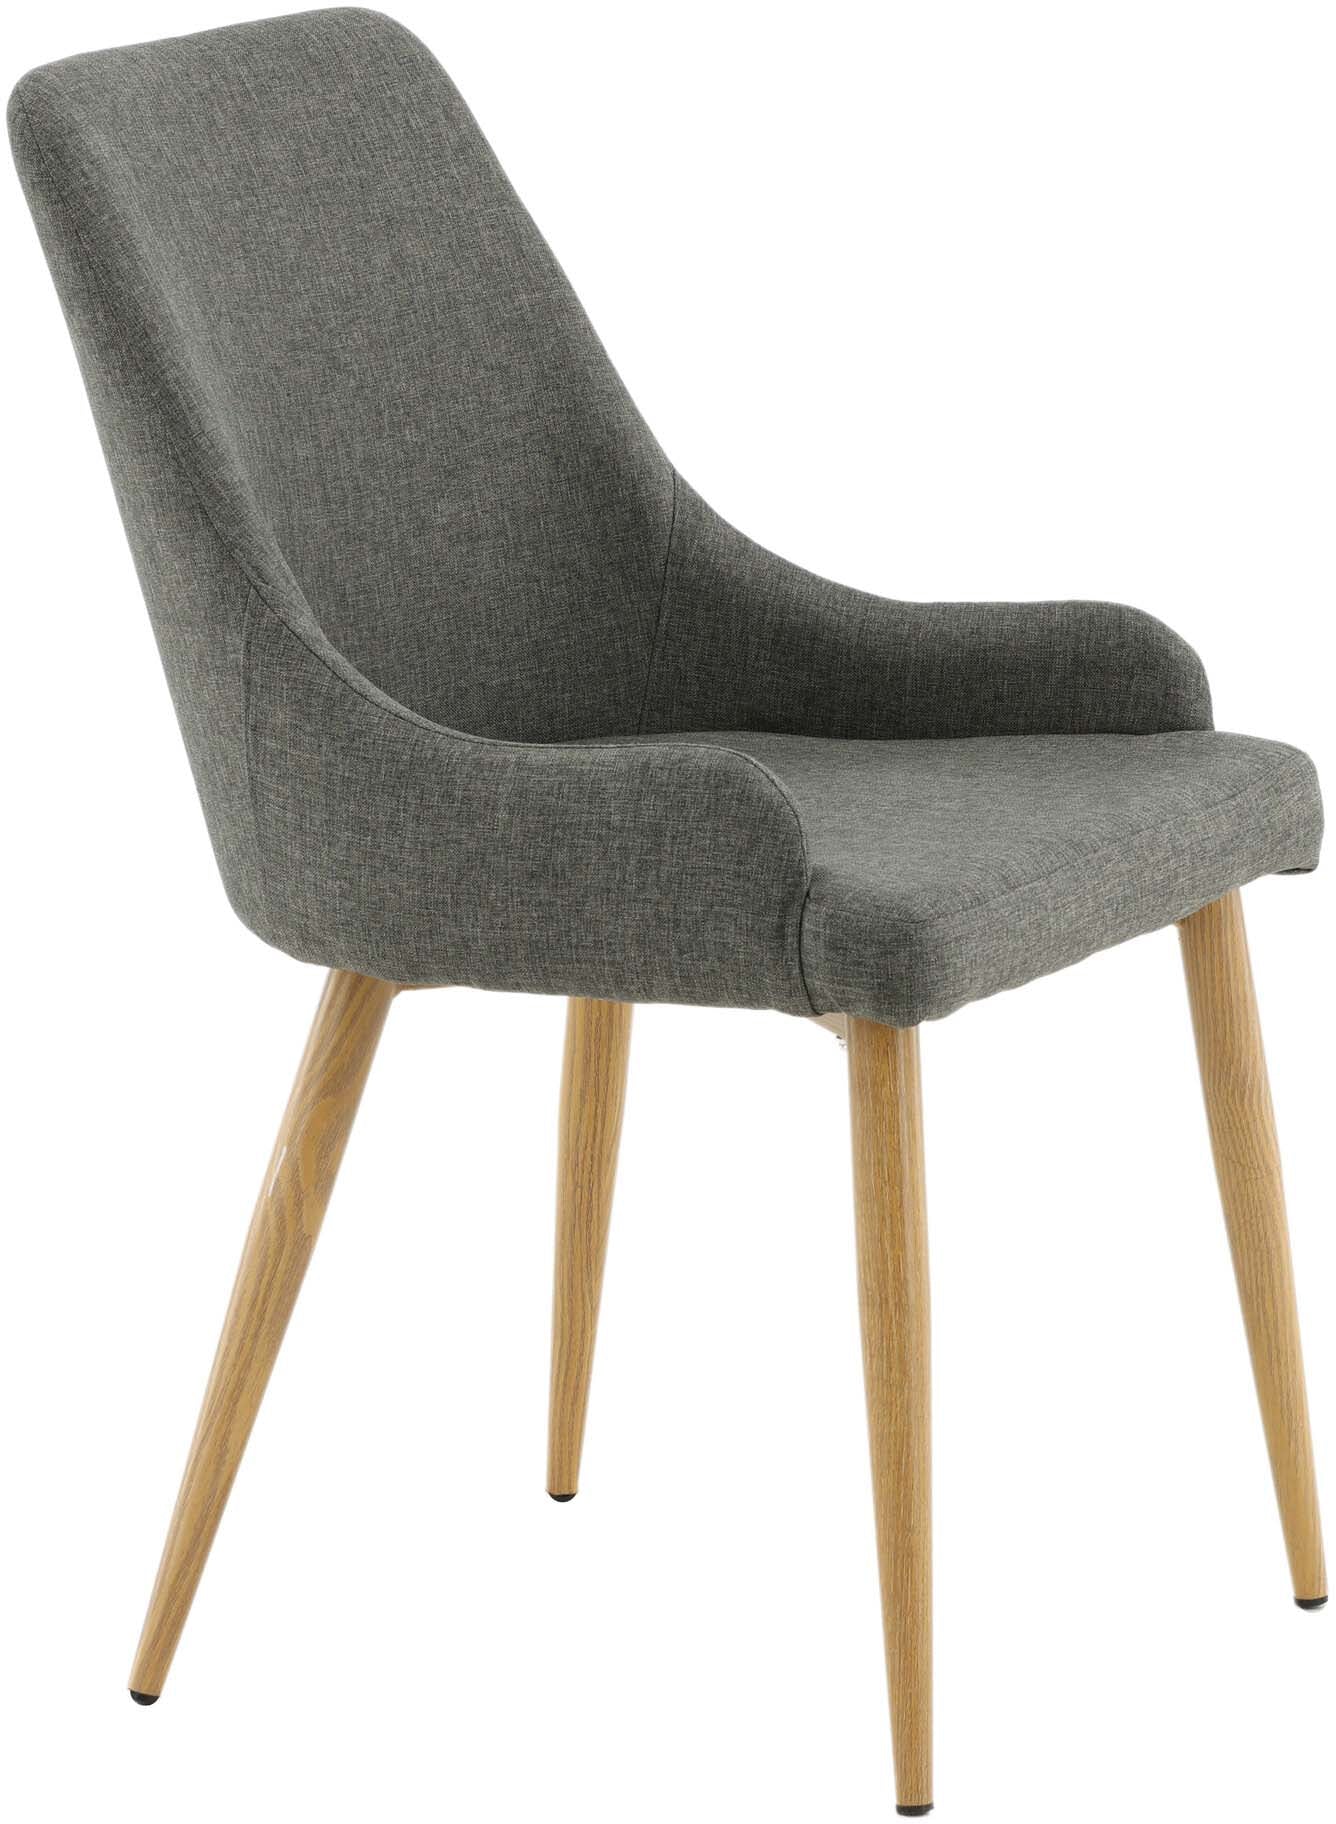 Plaza Stuhl in Dunkelgrau / Natur präsentiert im Onlineshop von KAQTU Design AG. Stuhl ist von Venture Home